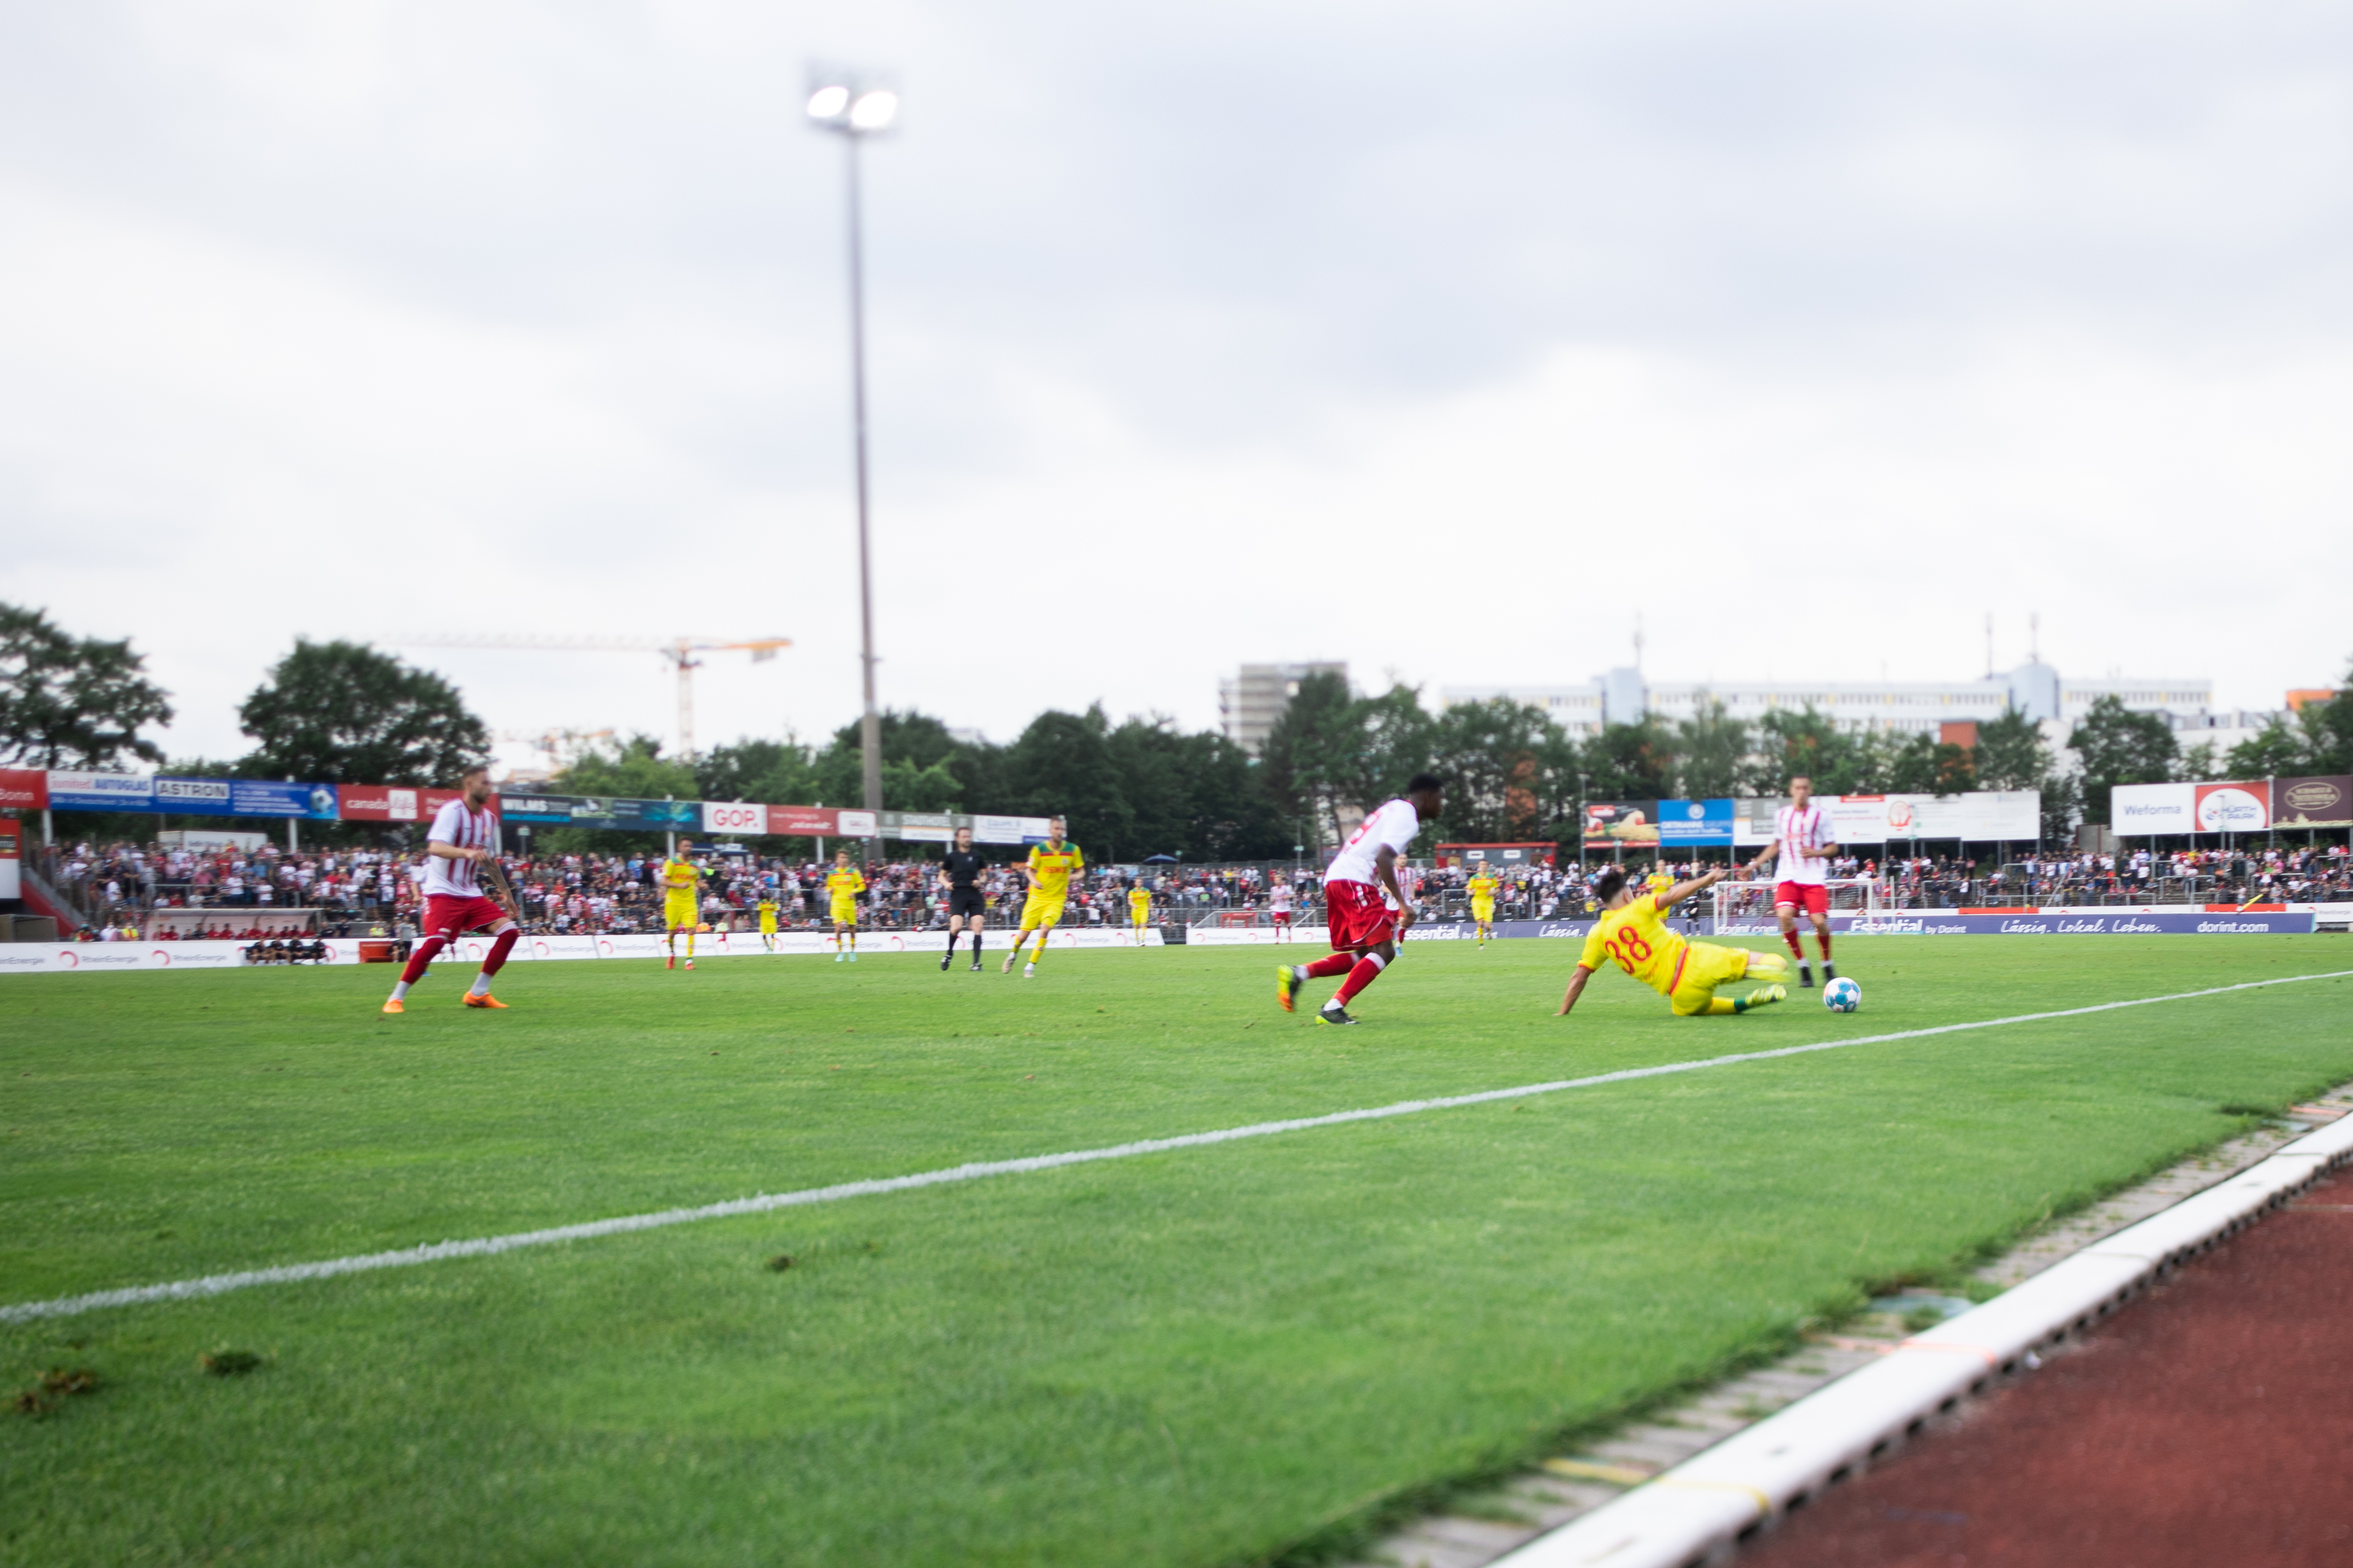 Regionalliga West: Torreiche Viertelstunde des Bonner SC gegen S04 - Fortuna Köln erster RWE-Verfolger